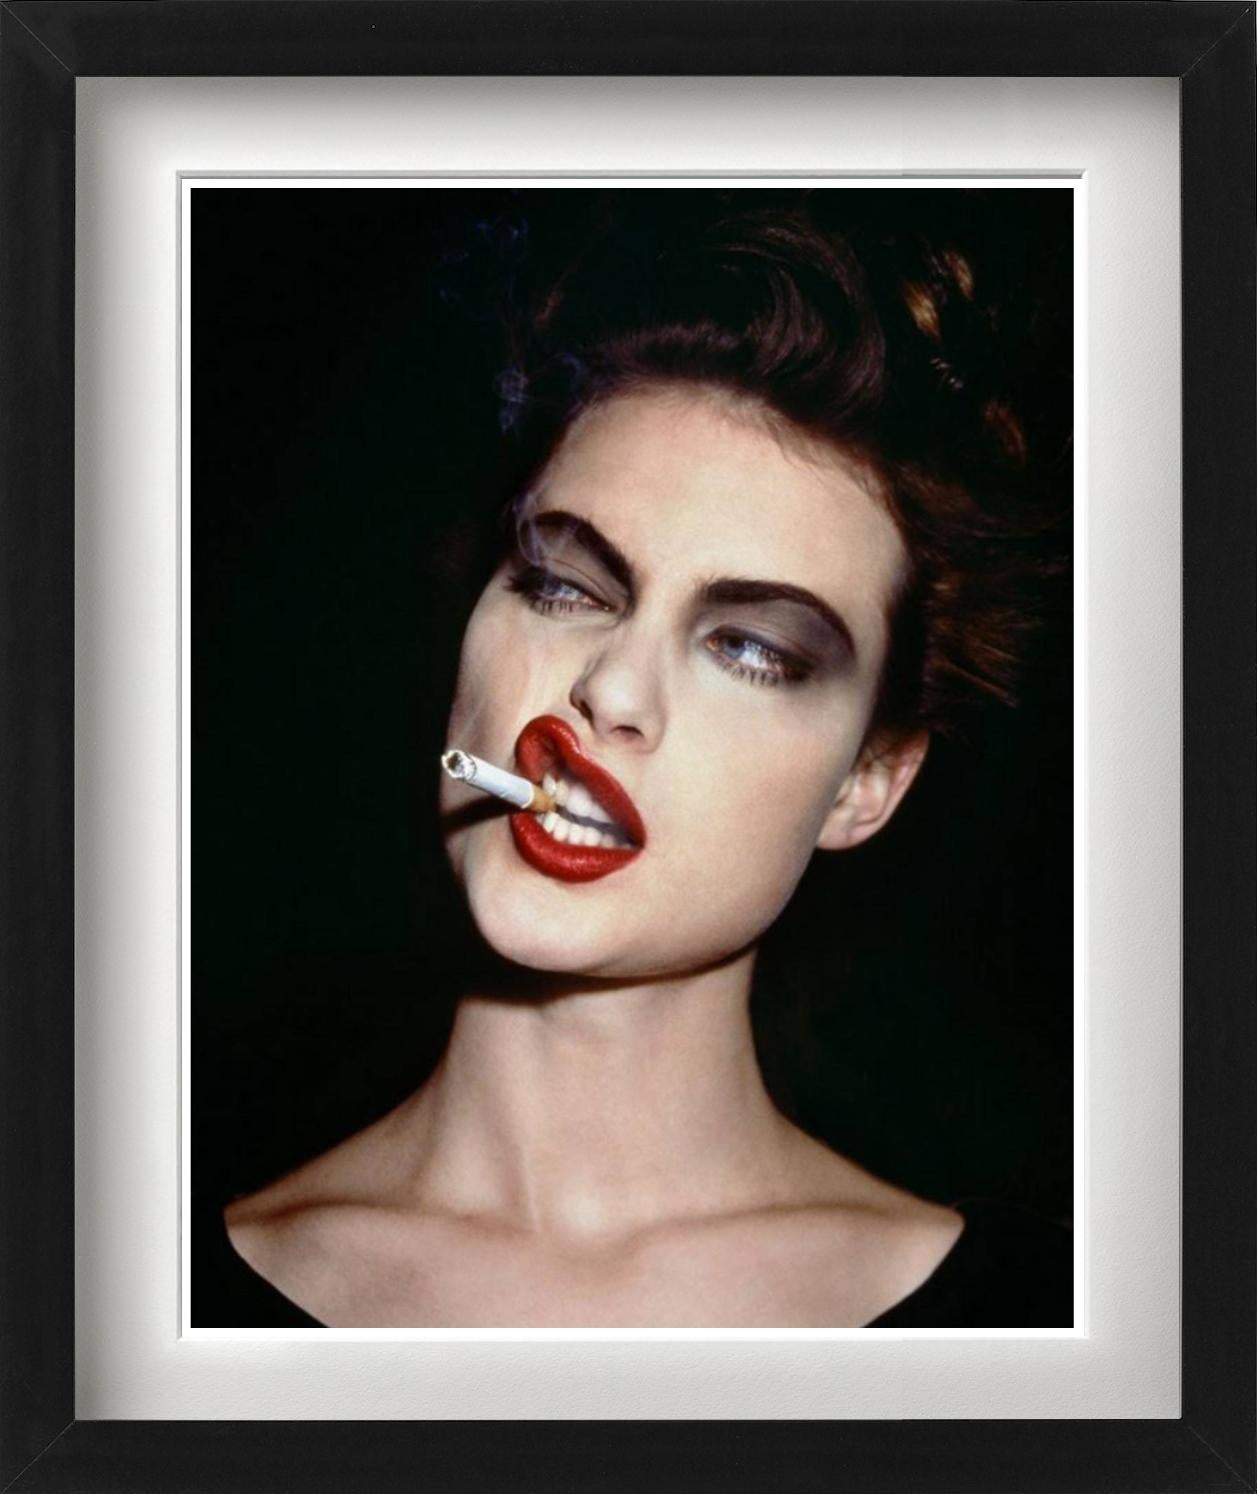 Shalom Harlow – Porträt des rauchenden Models, Kunstfotografie, 1995 – Photograph von Roxanne Lowit